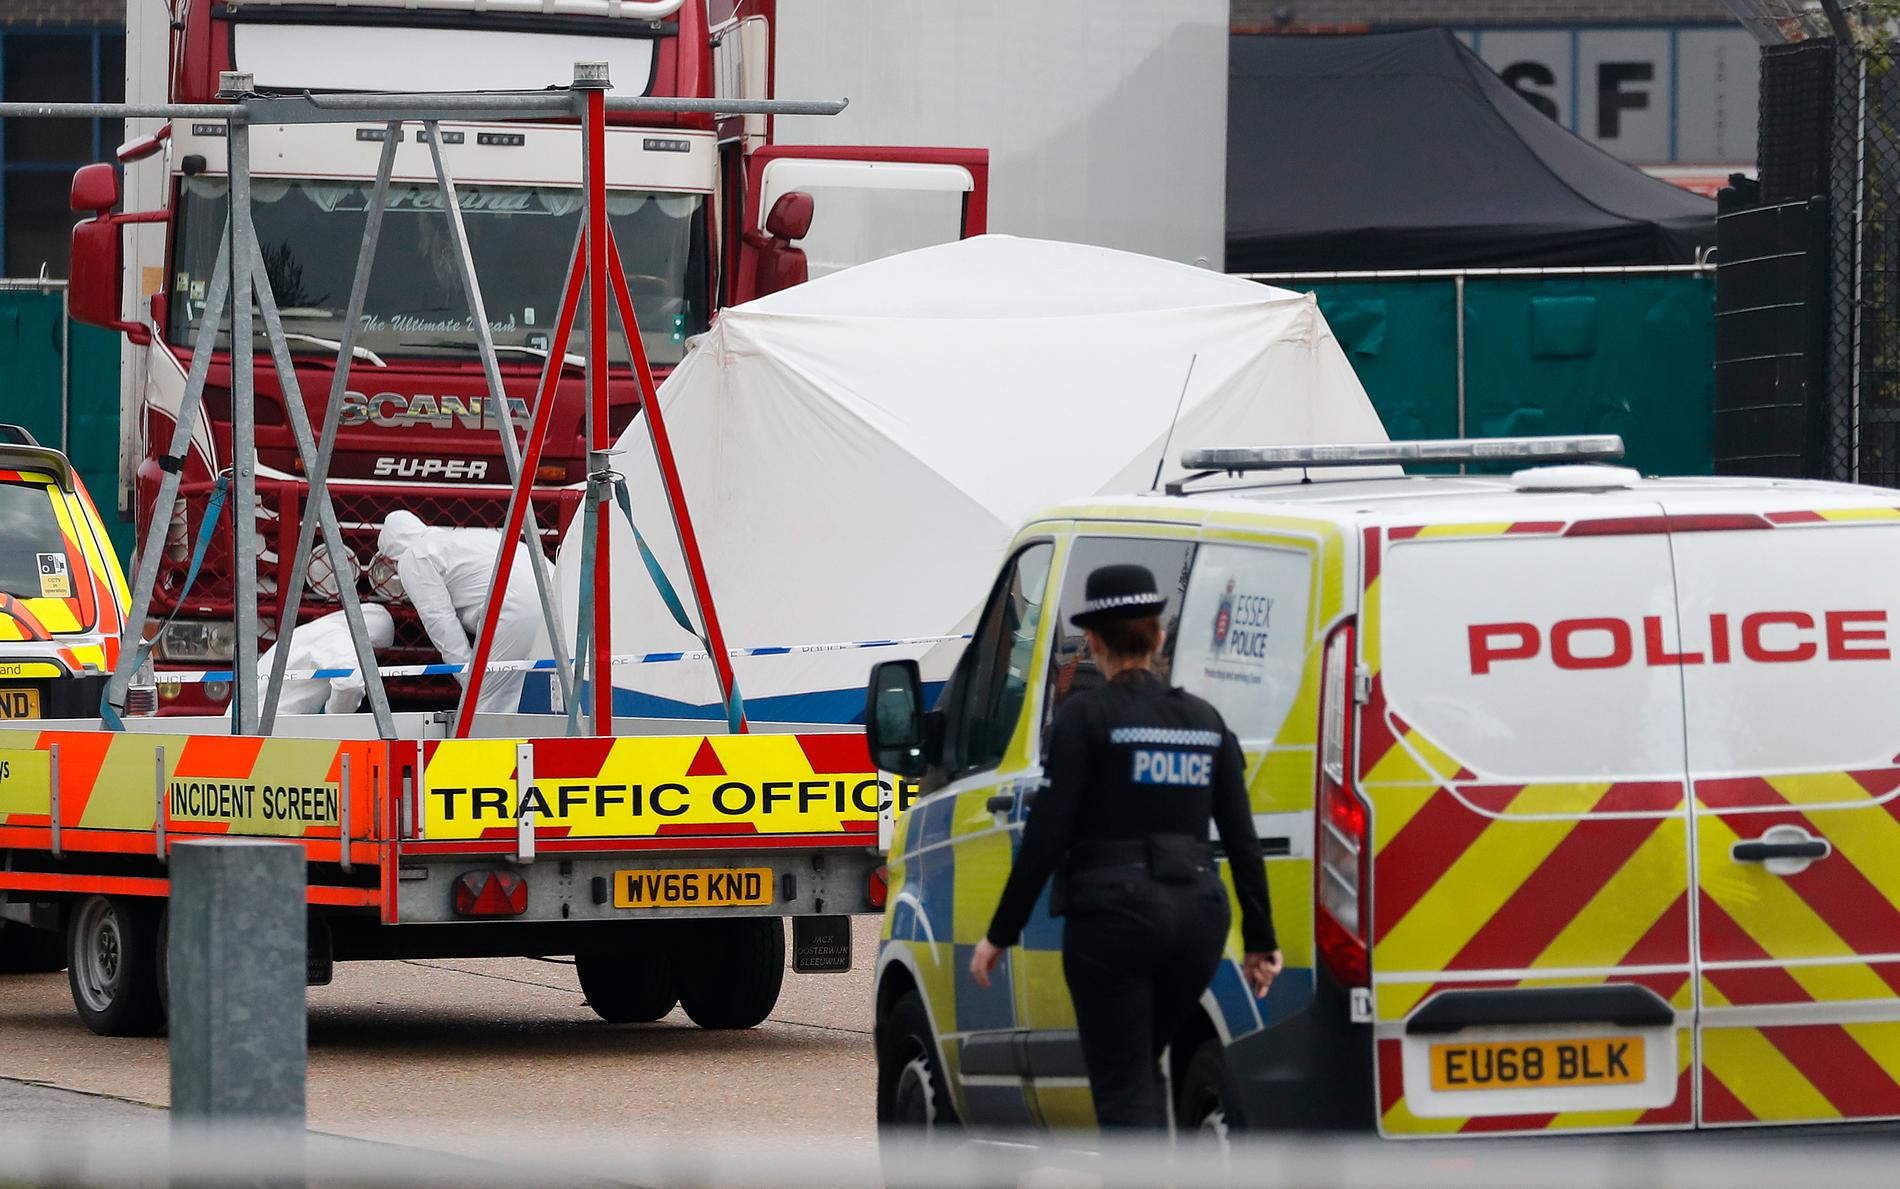 Människosmugglare ska "jagas och ställas inför rätta", säger Storbritanniens premiärminister Boris Johnson efter att 39 personer hittats döda i en lastbilscontainer öster om London.